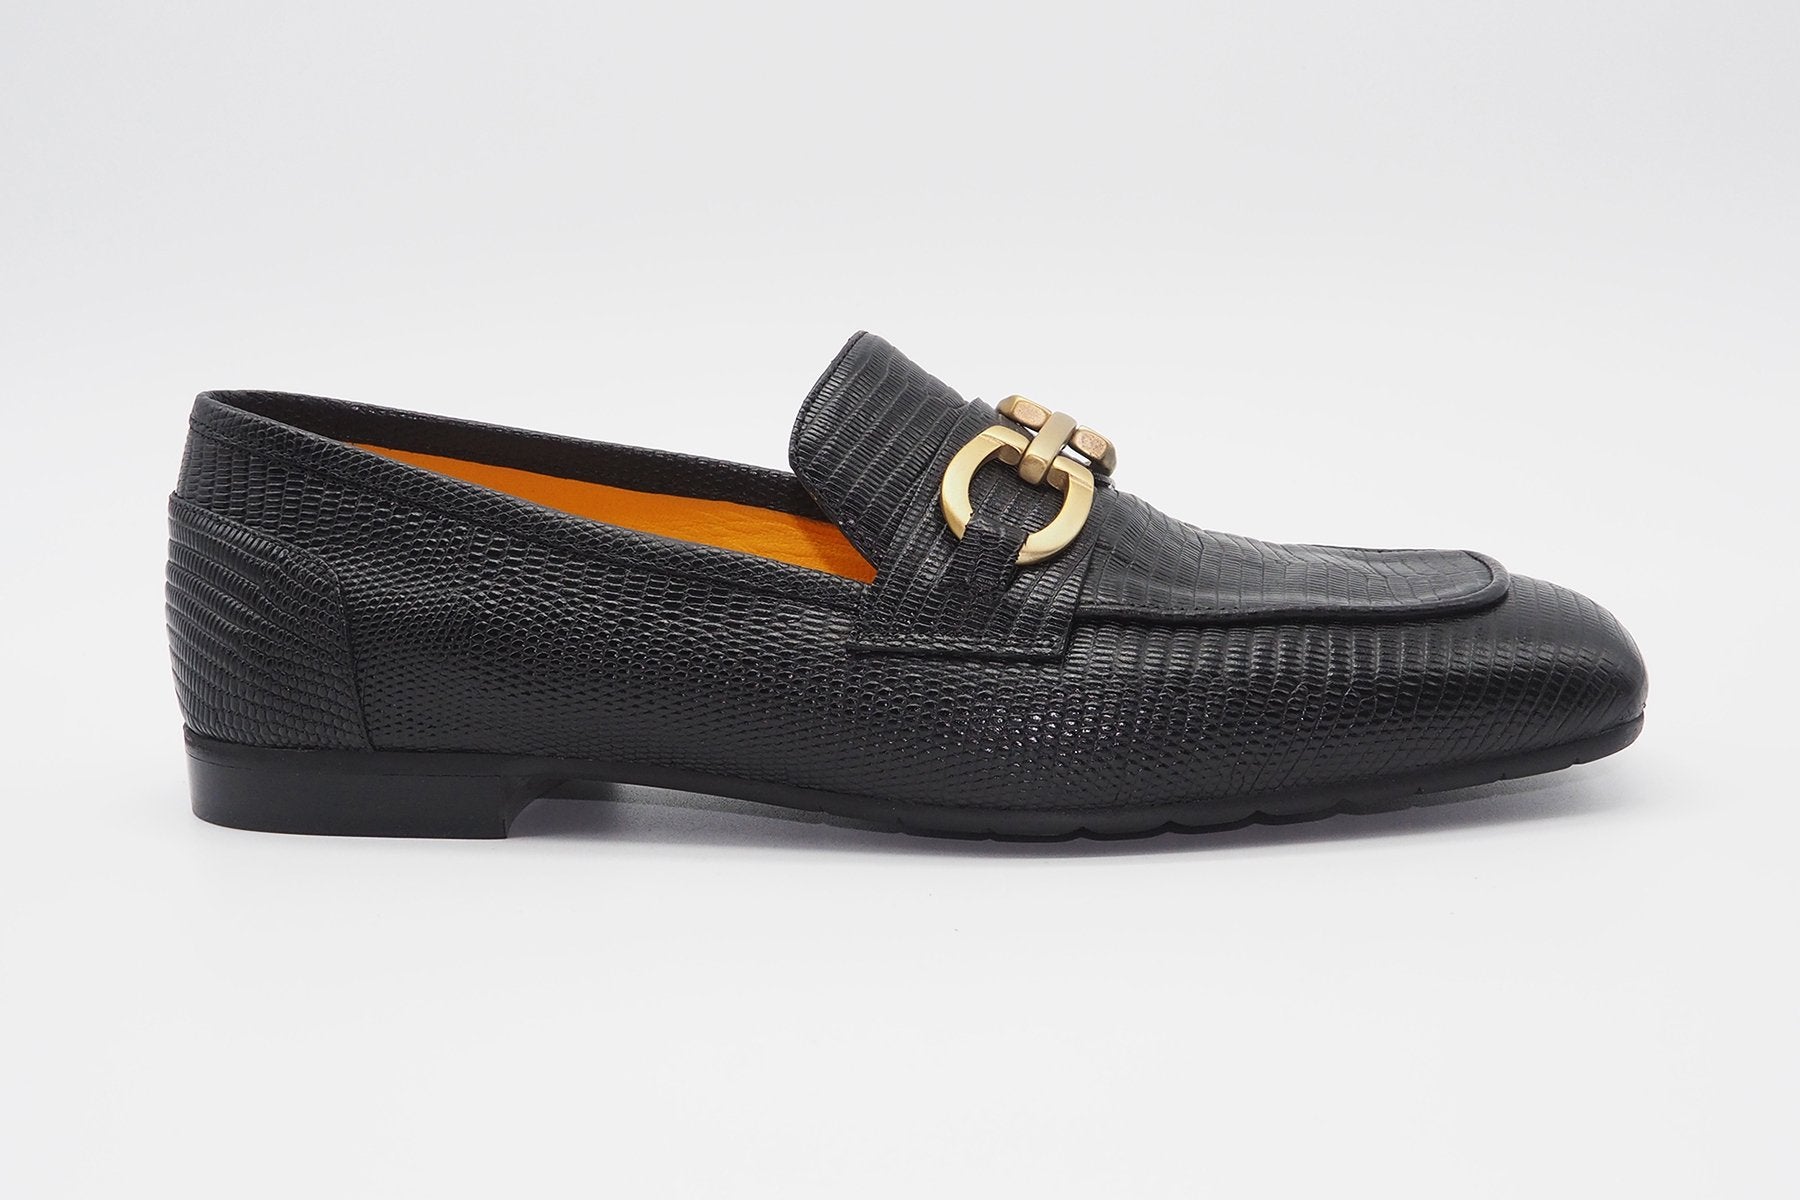 Edler Damen Loafer auf Karréleisten - geprägtes Leder in Schwarz Damen Loafers Mara Bini